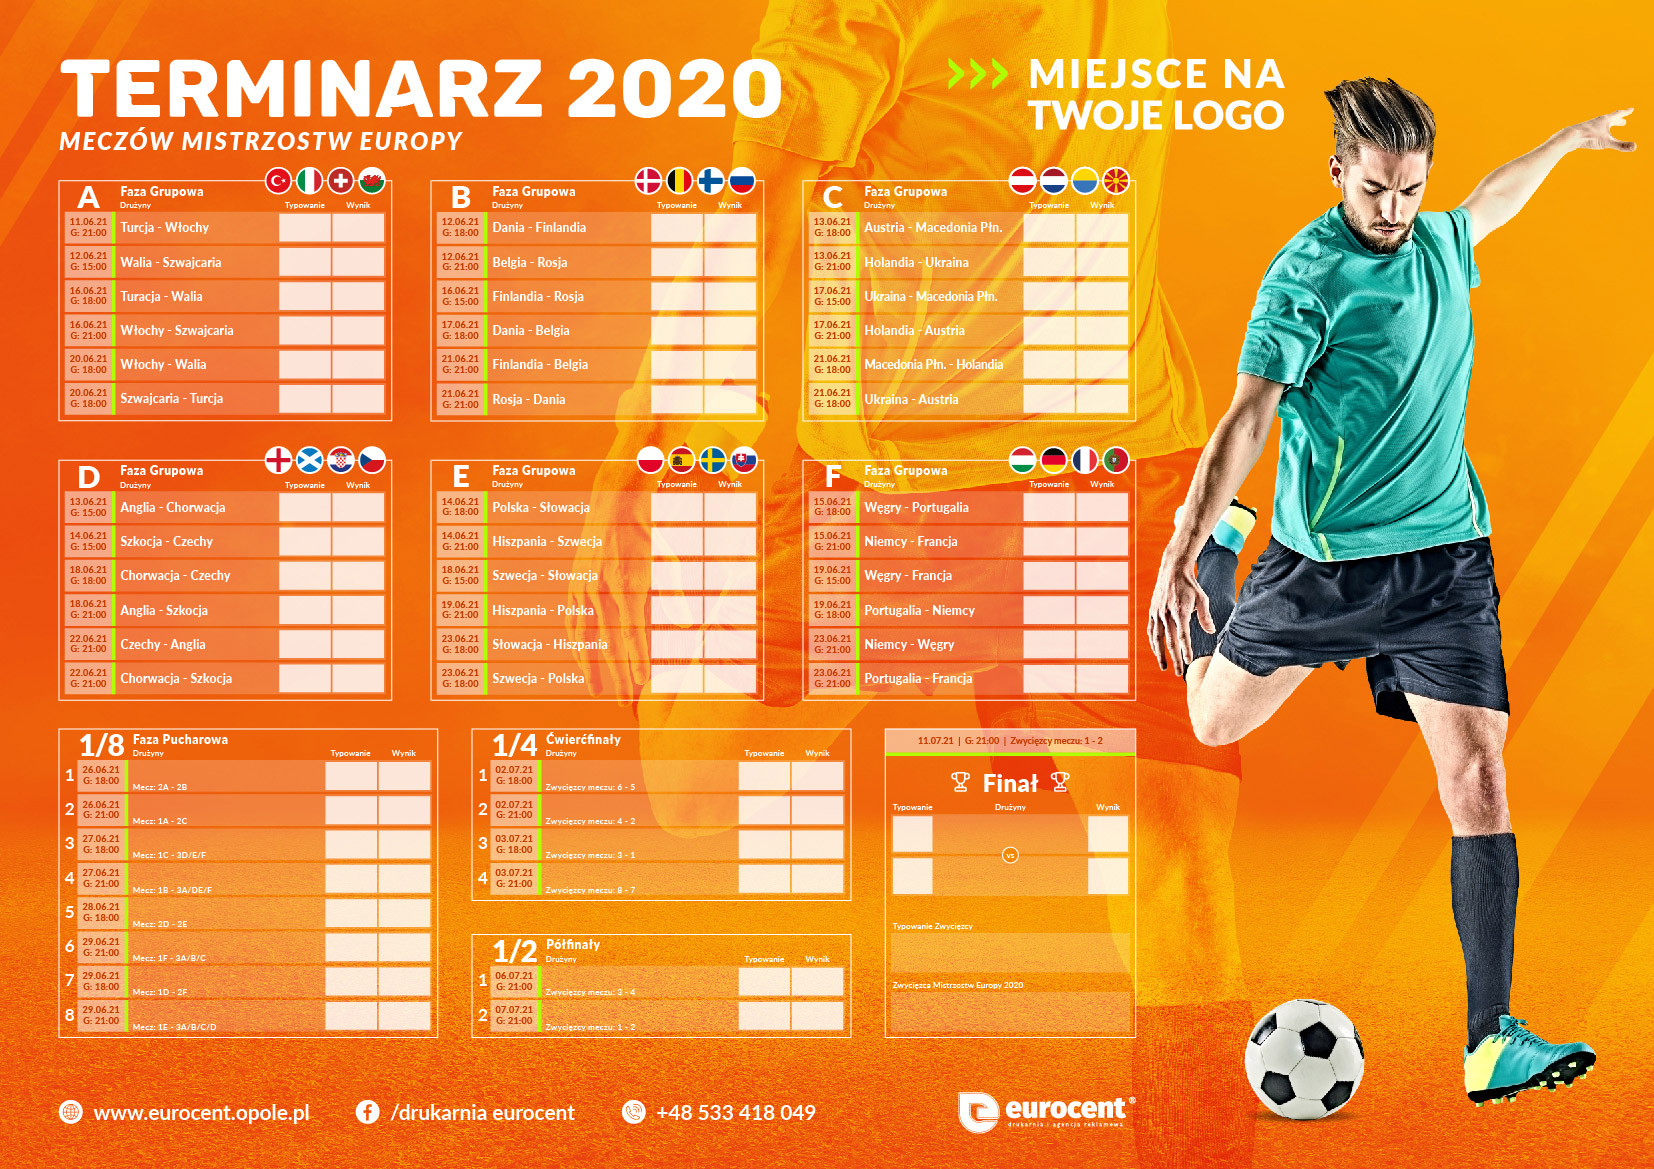 Terminarz mistrzostw Europy 2020/21 z logotypem dla dzieci